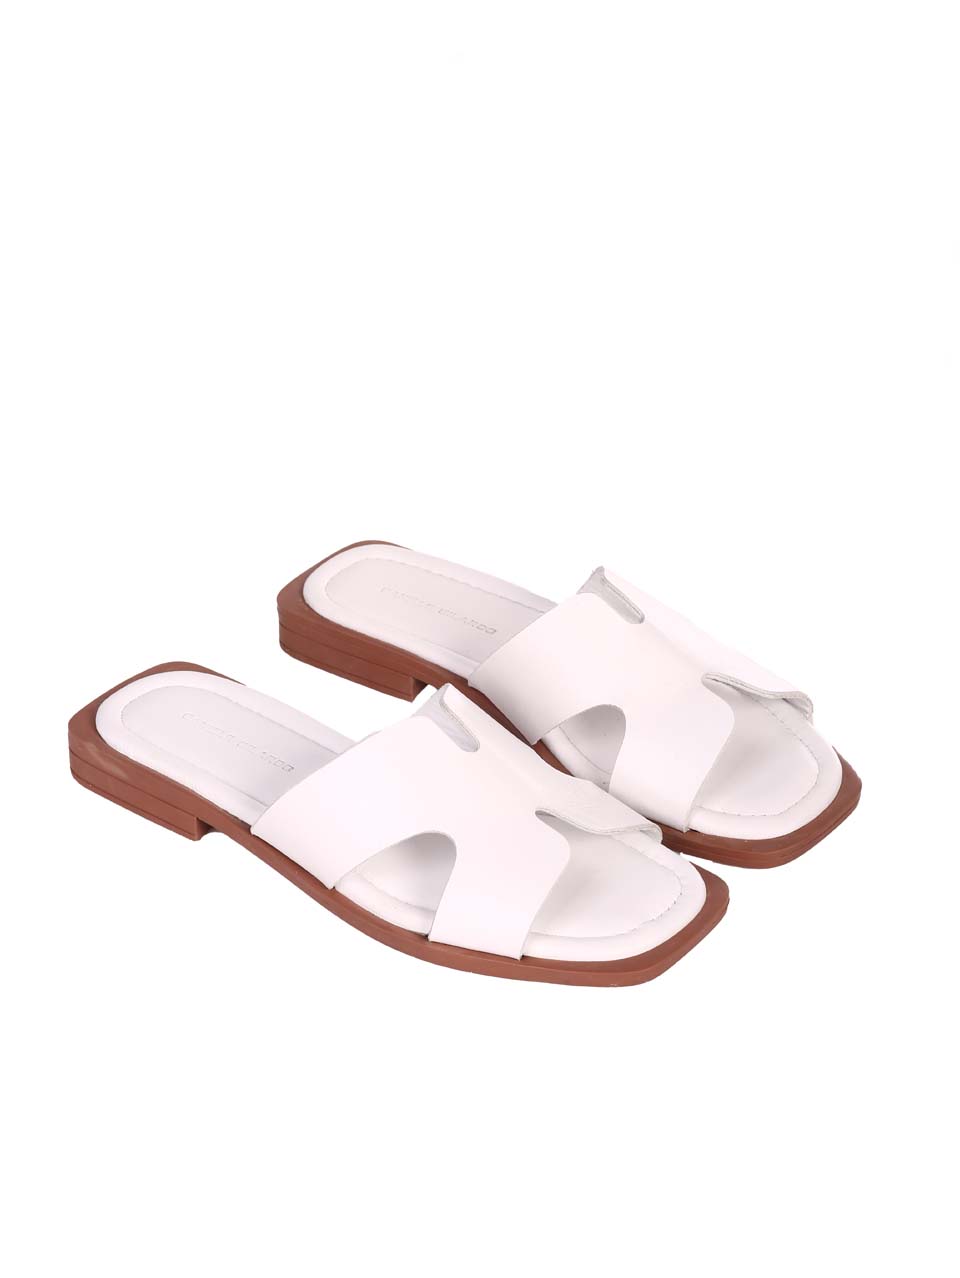 Ежедневни дамски равни чехли от естествена кожа в бяло 5AT-24348 white